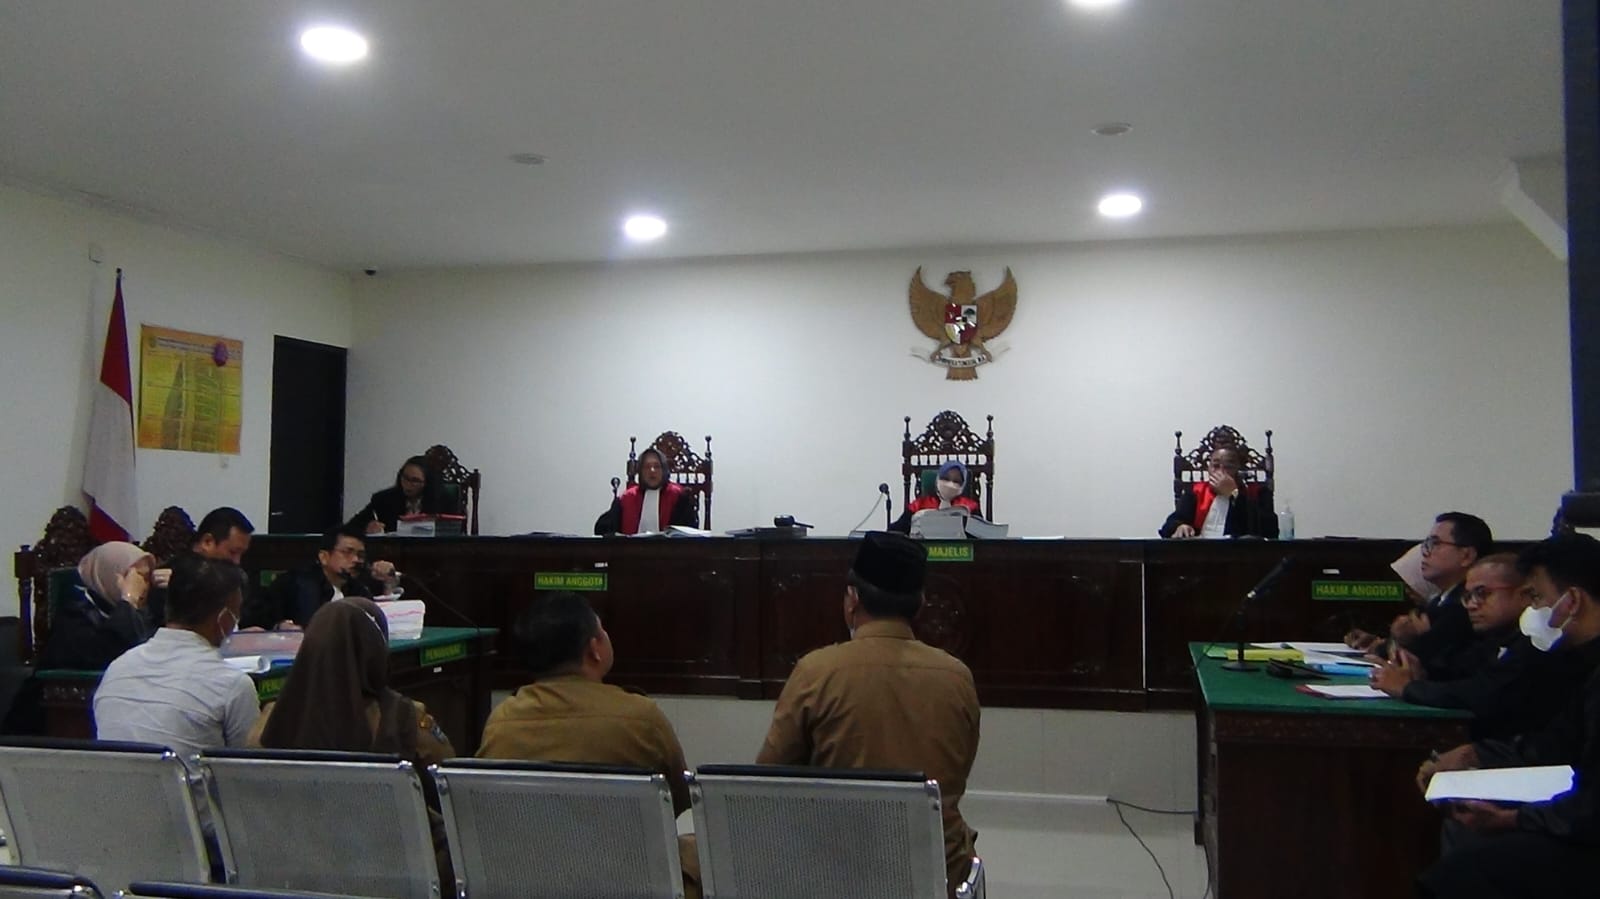 4 Pejabat Dihadirkan Dalam Persidangan Pungli Mantan Kadis Dikbud BU